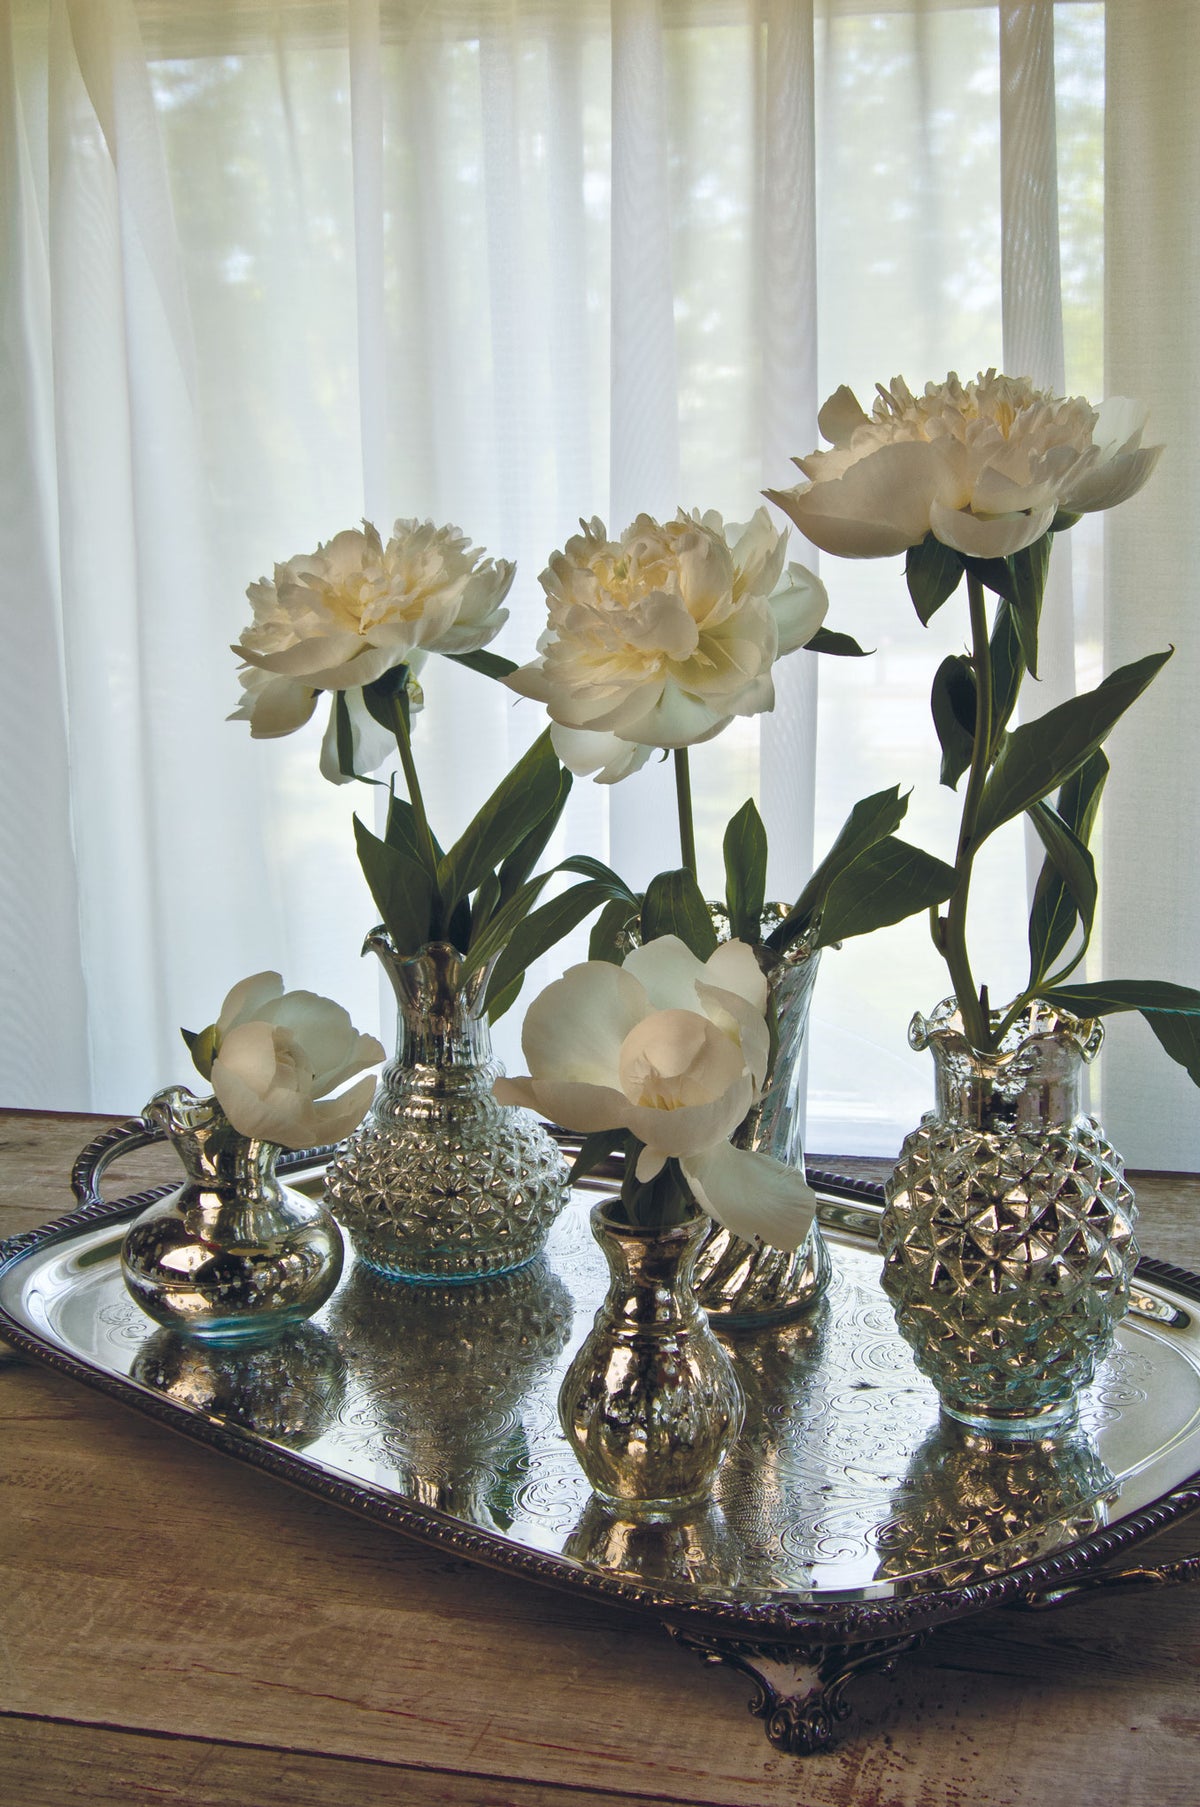 2 PACK | Vintage Mercury Glass Vase (4-Inch, Bernadette Mini Ribbed Design, Silver) - Decorative Flower Vase - PaperLanternStore.com - Paper Lanterns, Decor, Party Lights &amp; More